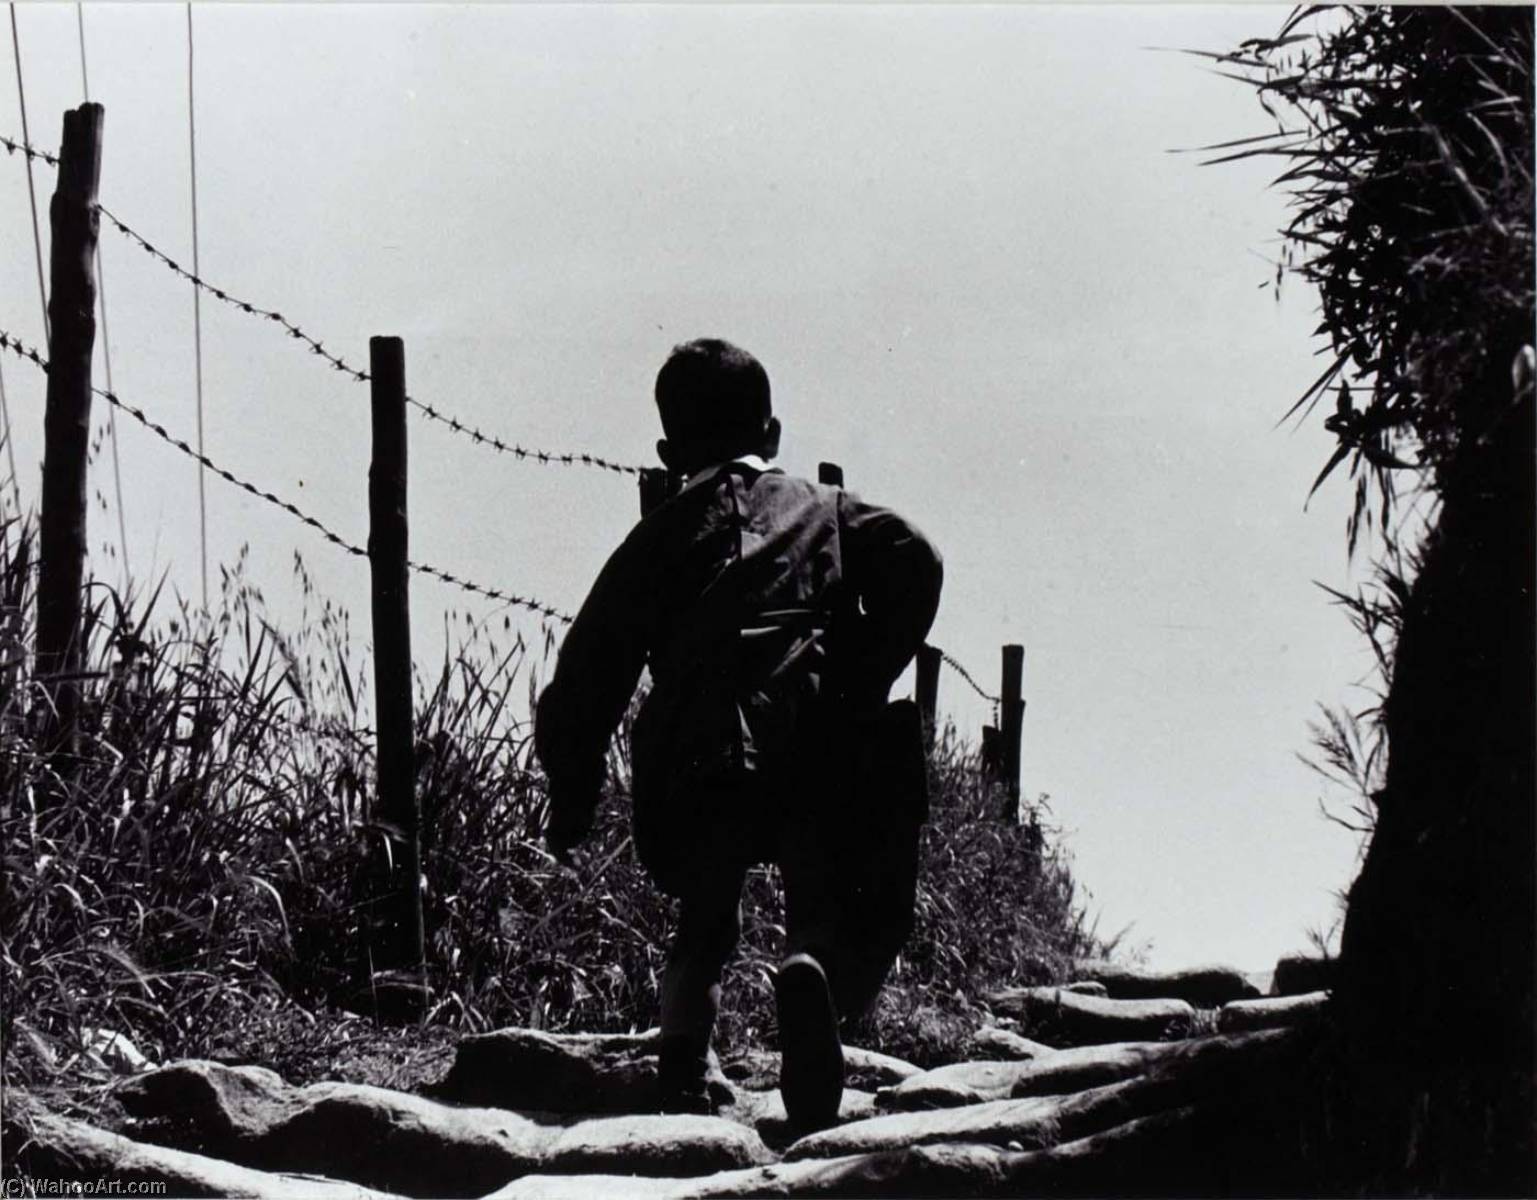 Rome (Back of Boy Walking beside Barbed Wire Fence), 1971 by Jeffrey Blankfort Jeffrey Blankfort | ArtsDot.com